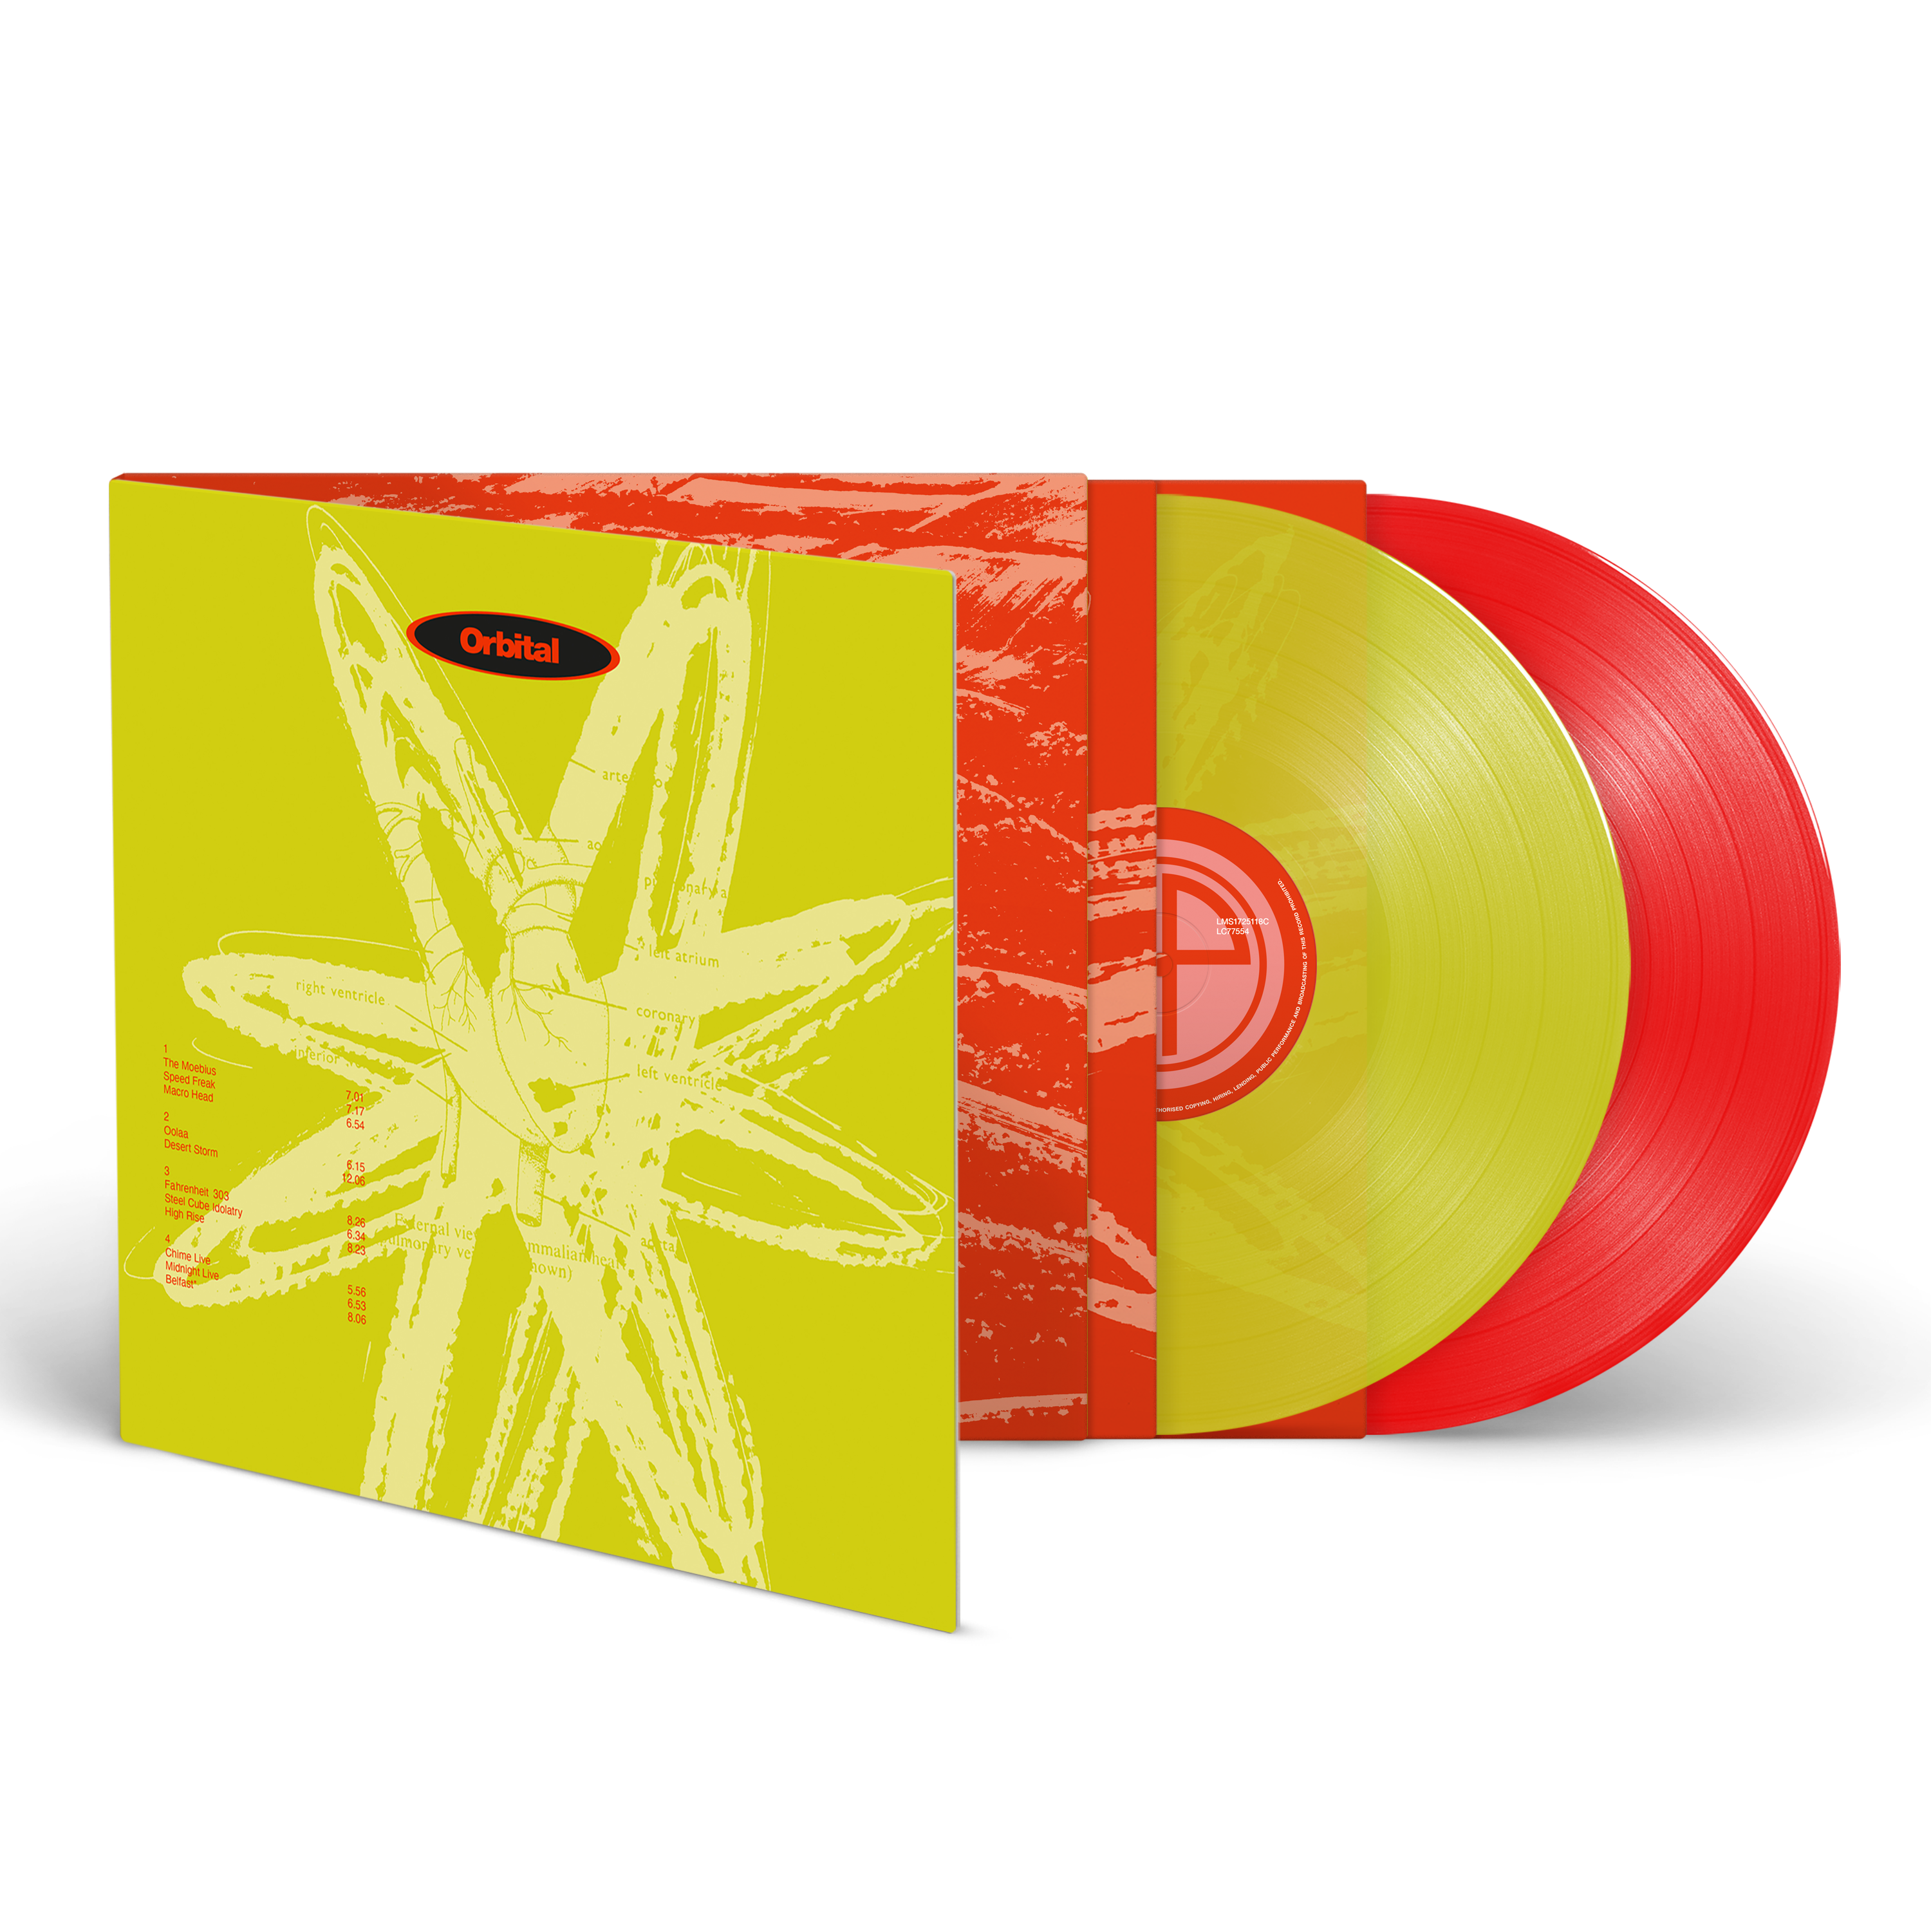 Orbital - Orbital: Limited Green & Red Vinyl 2LP